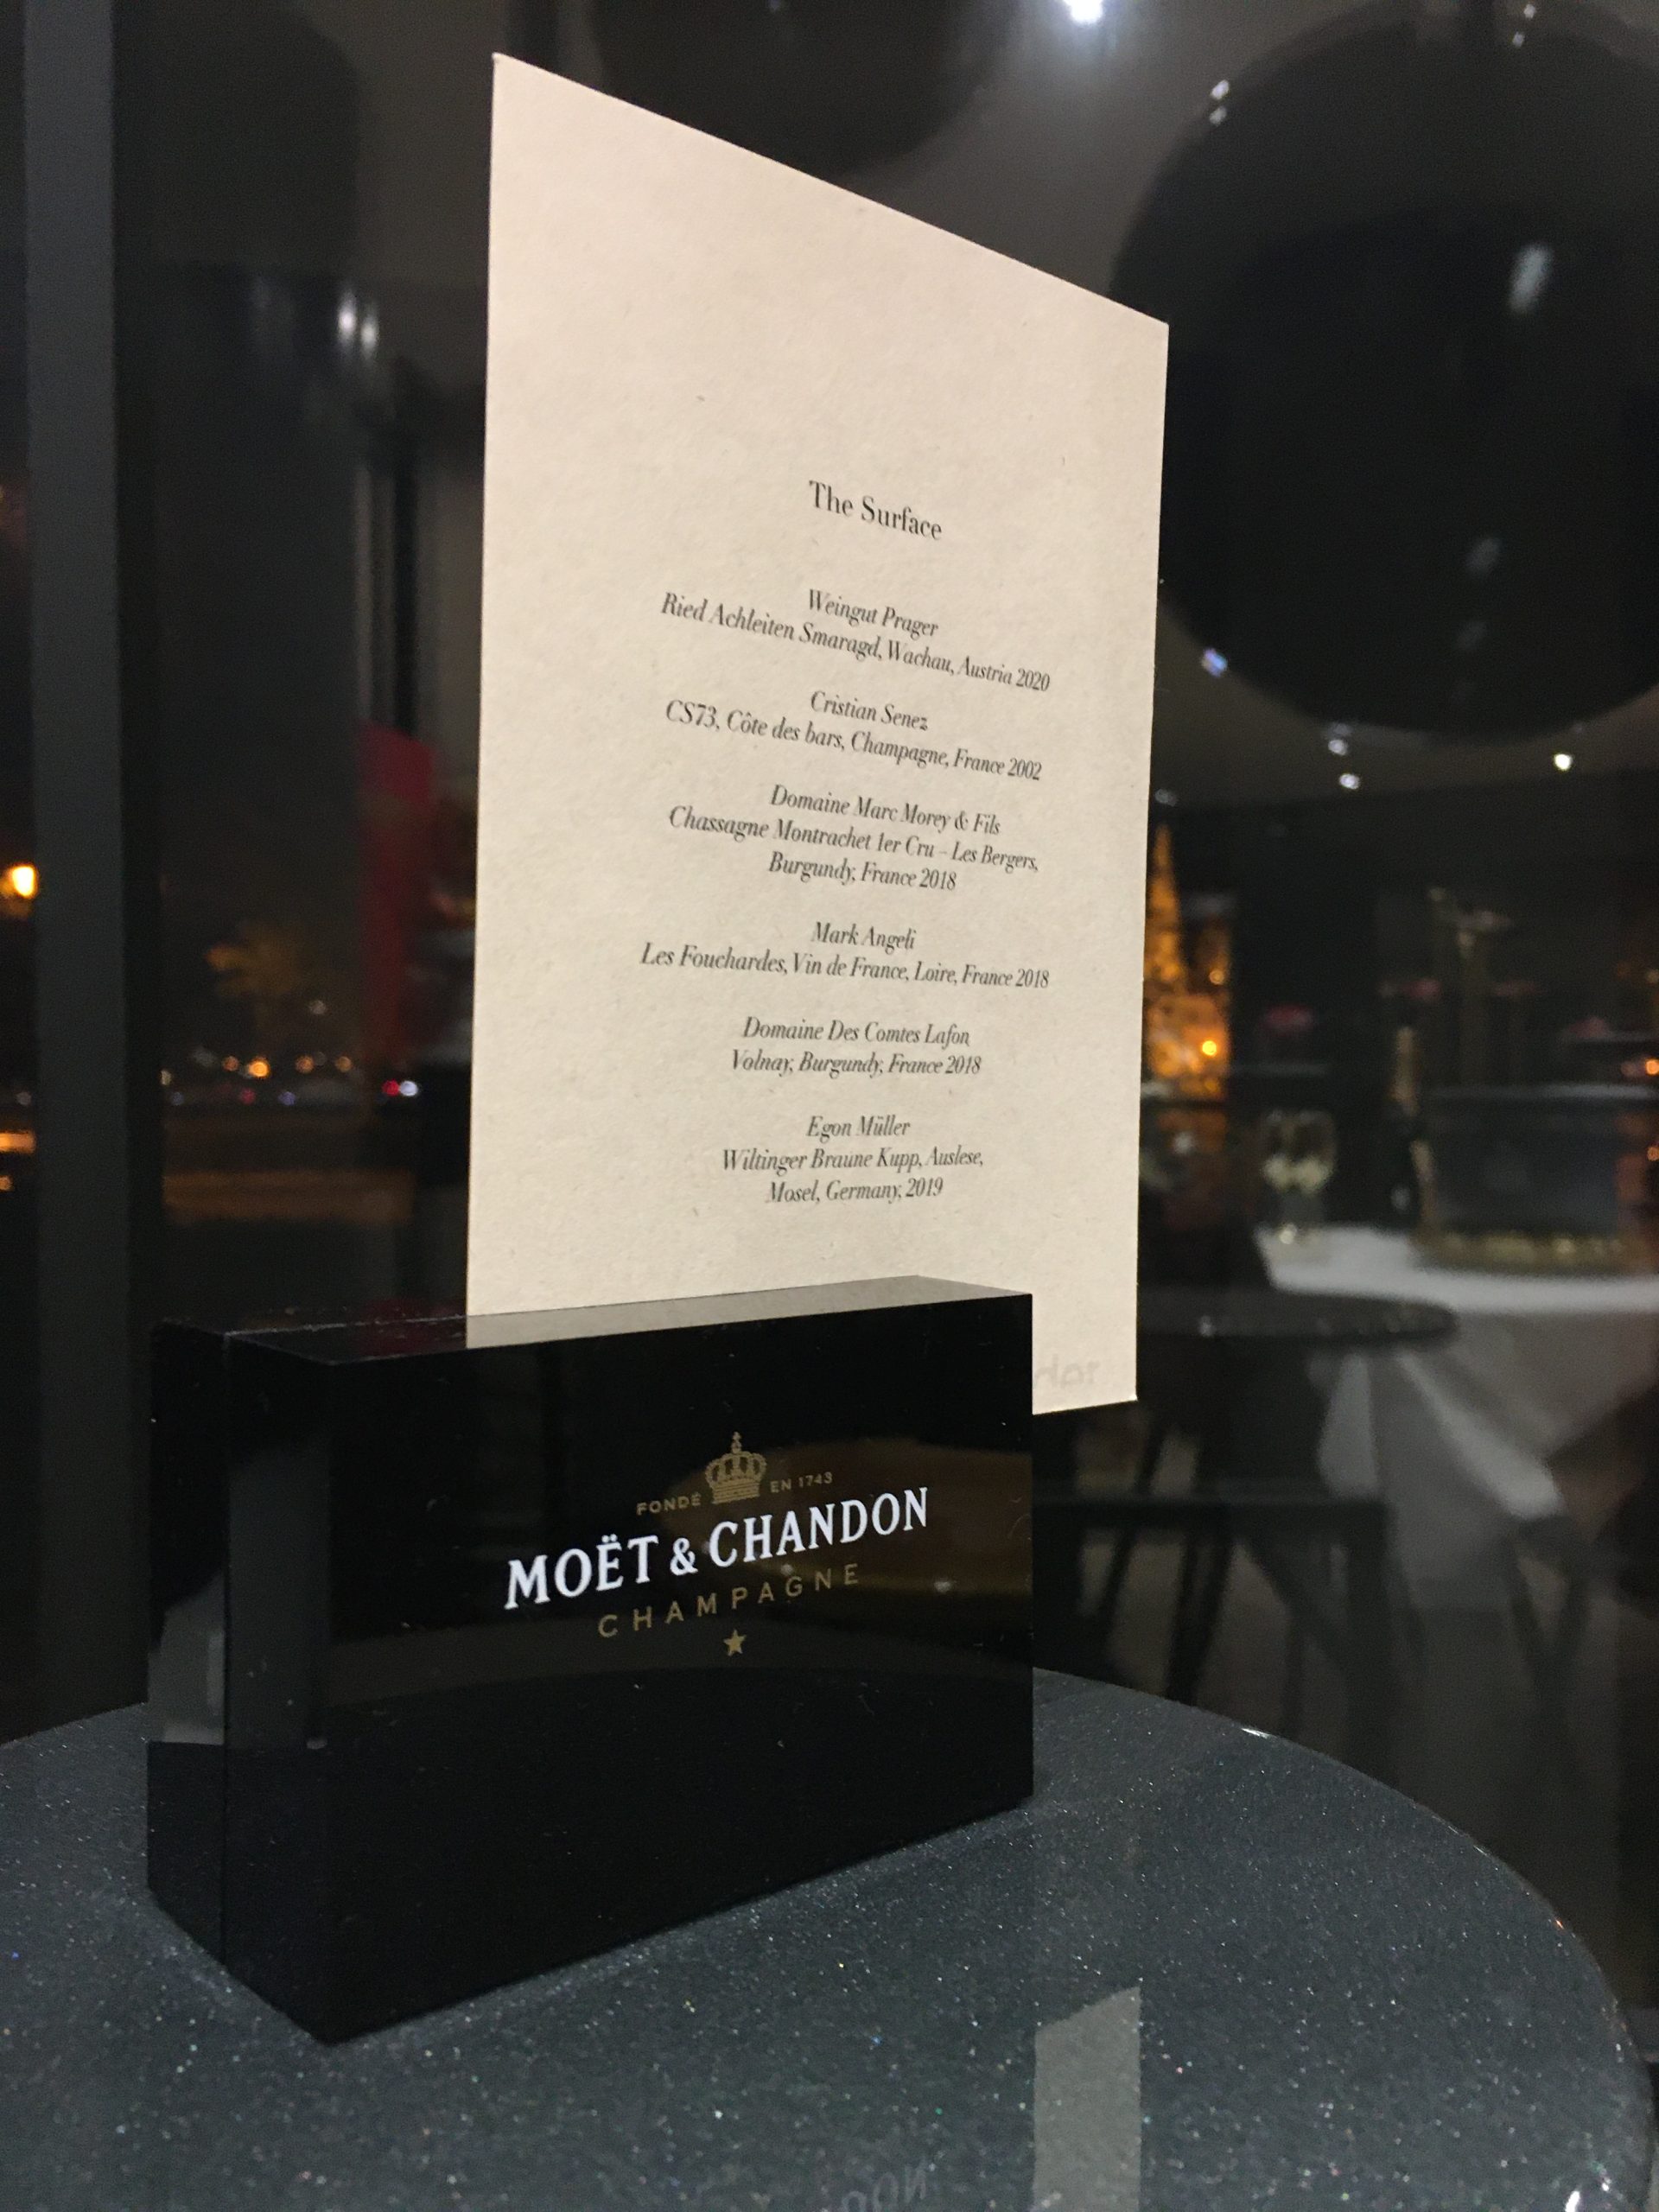 10 darabos készlet – Moët & Chandon Champagne éttermi menütartó – 8.500.-Ft/db